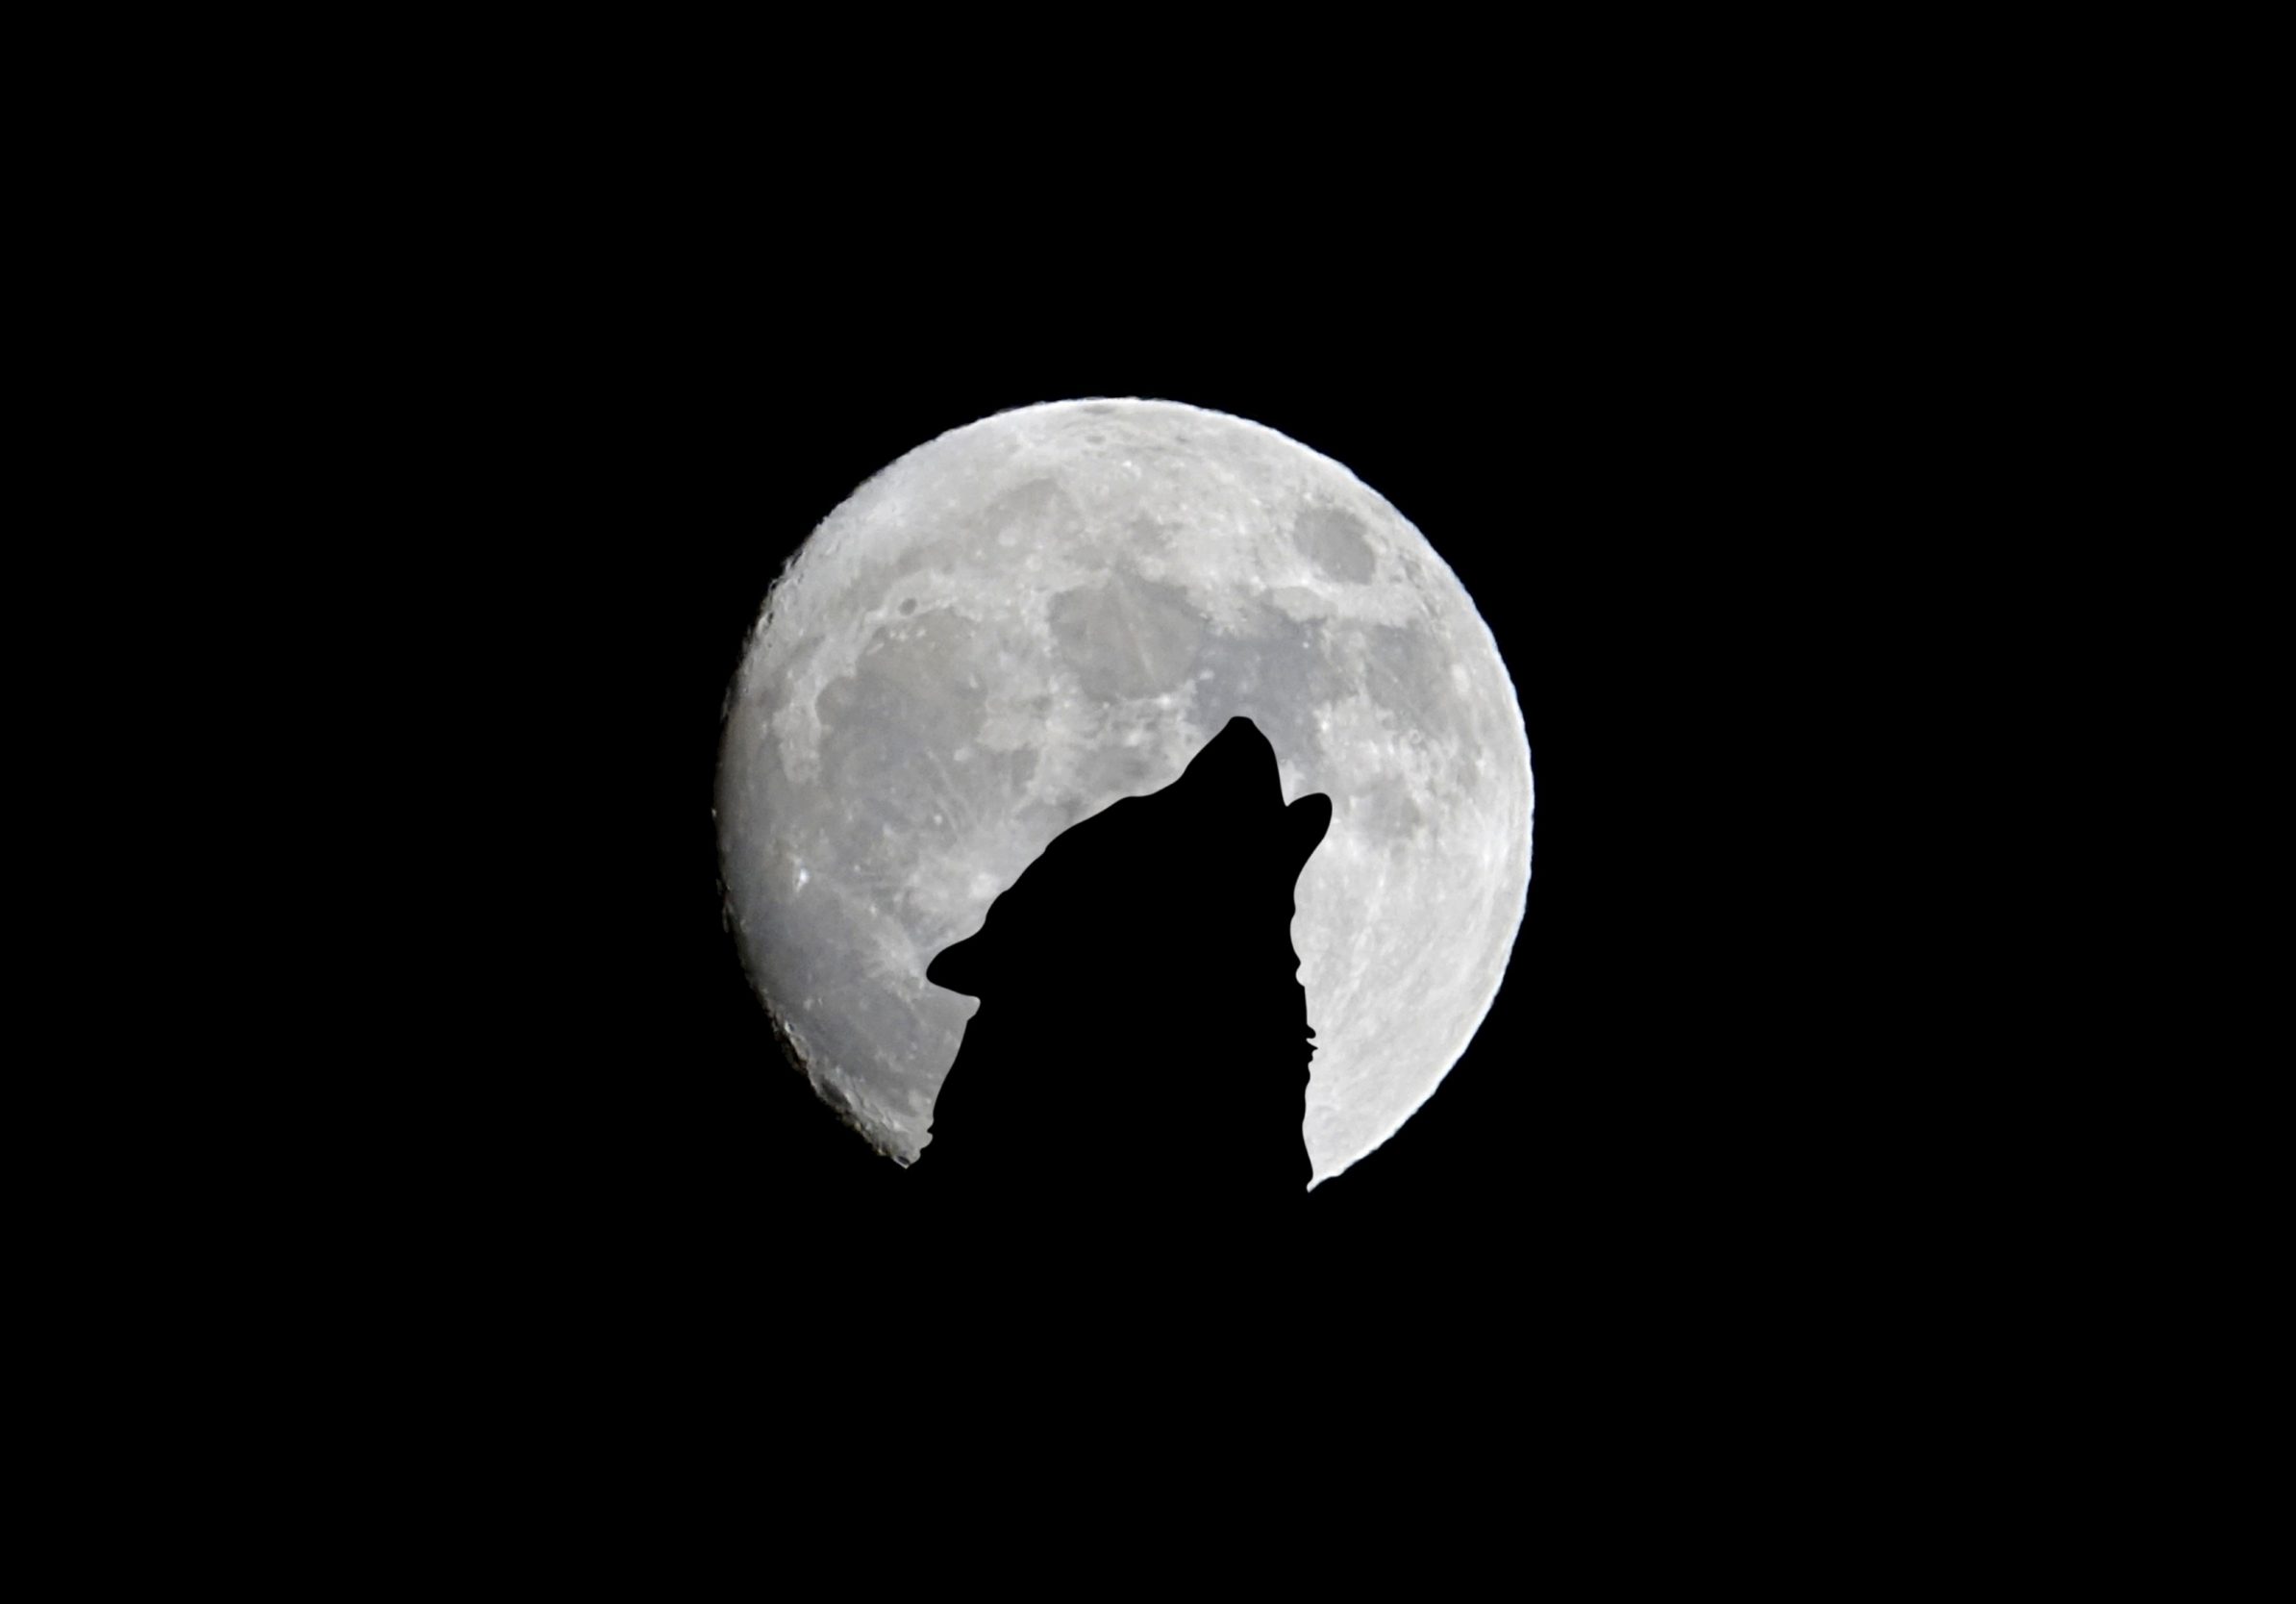 2388x1668 iPad Pro wallpapers Silhouette of Wolf Full Moon Night Darkness iPad Wallpaper 2388x1668 pixels resolution